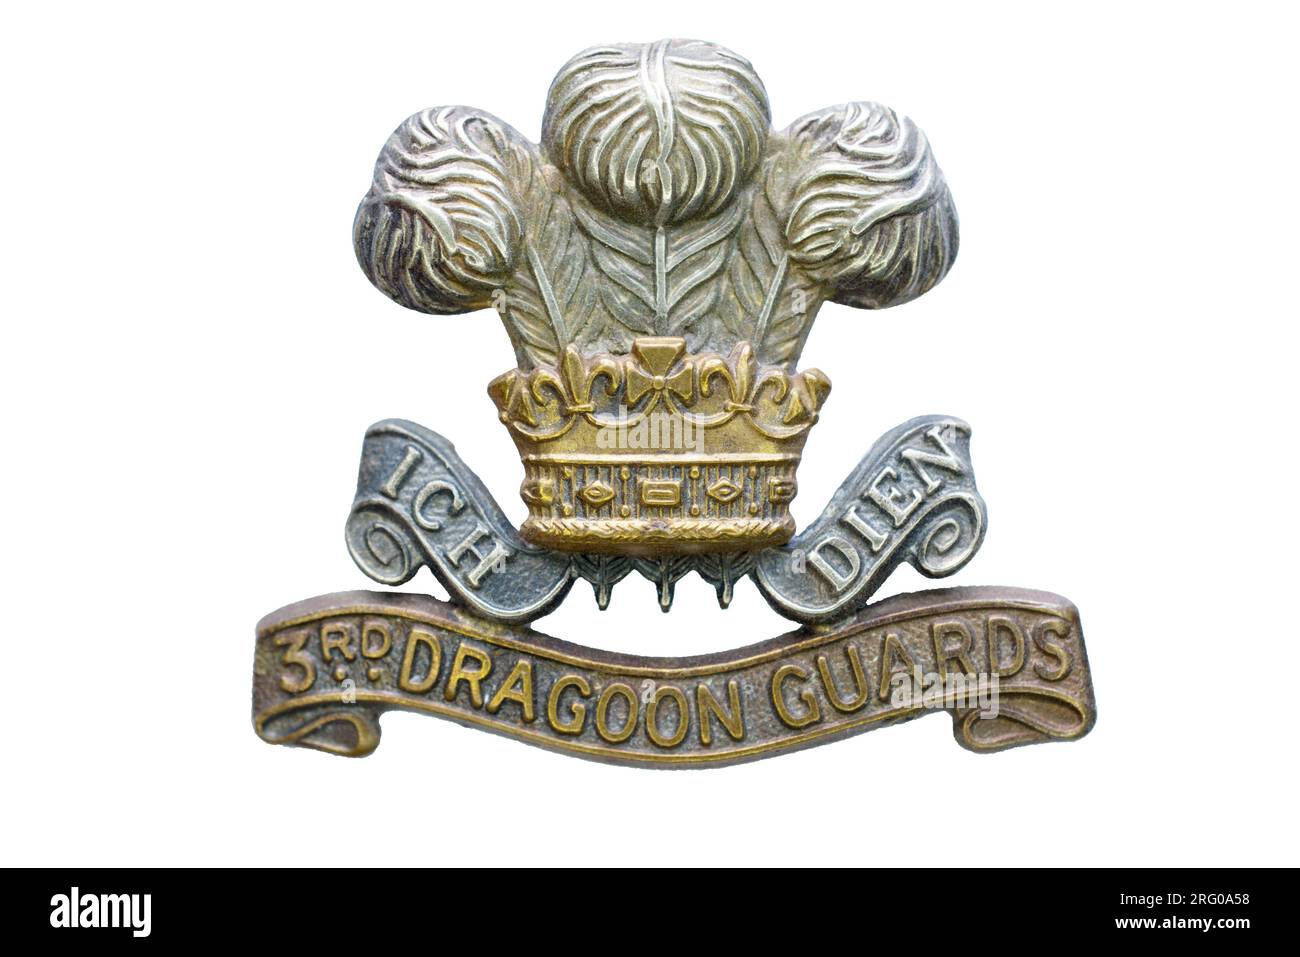 Das Mützenabzeichen der 3. Dragoon Guards. Stockfoto